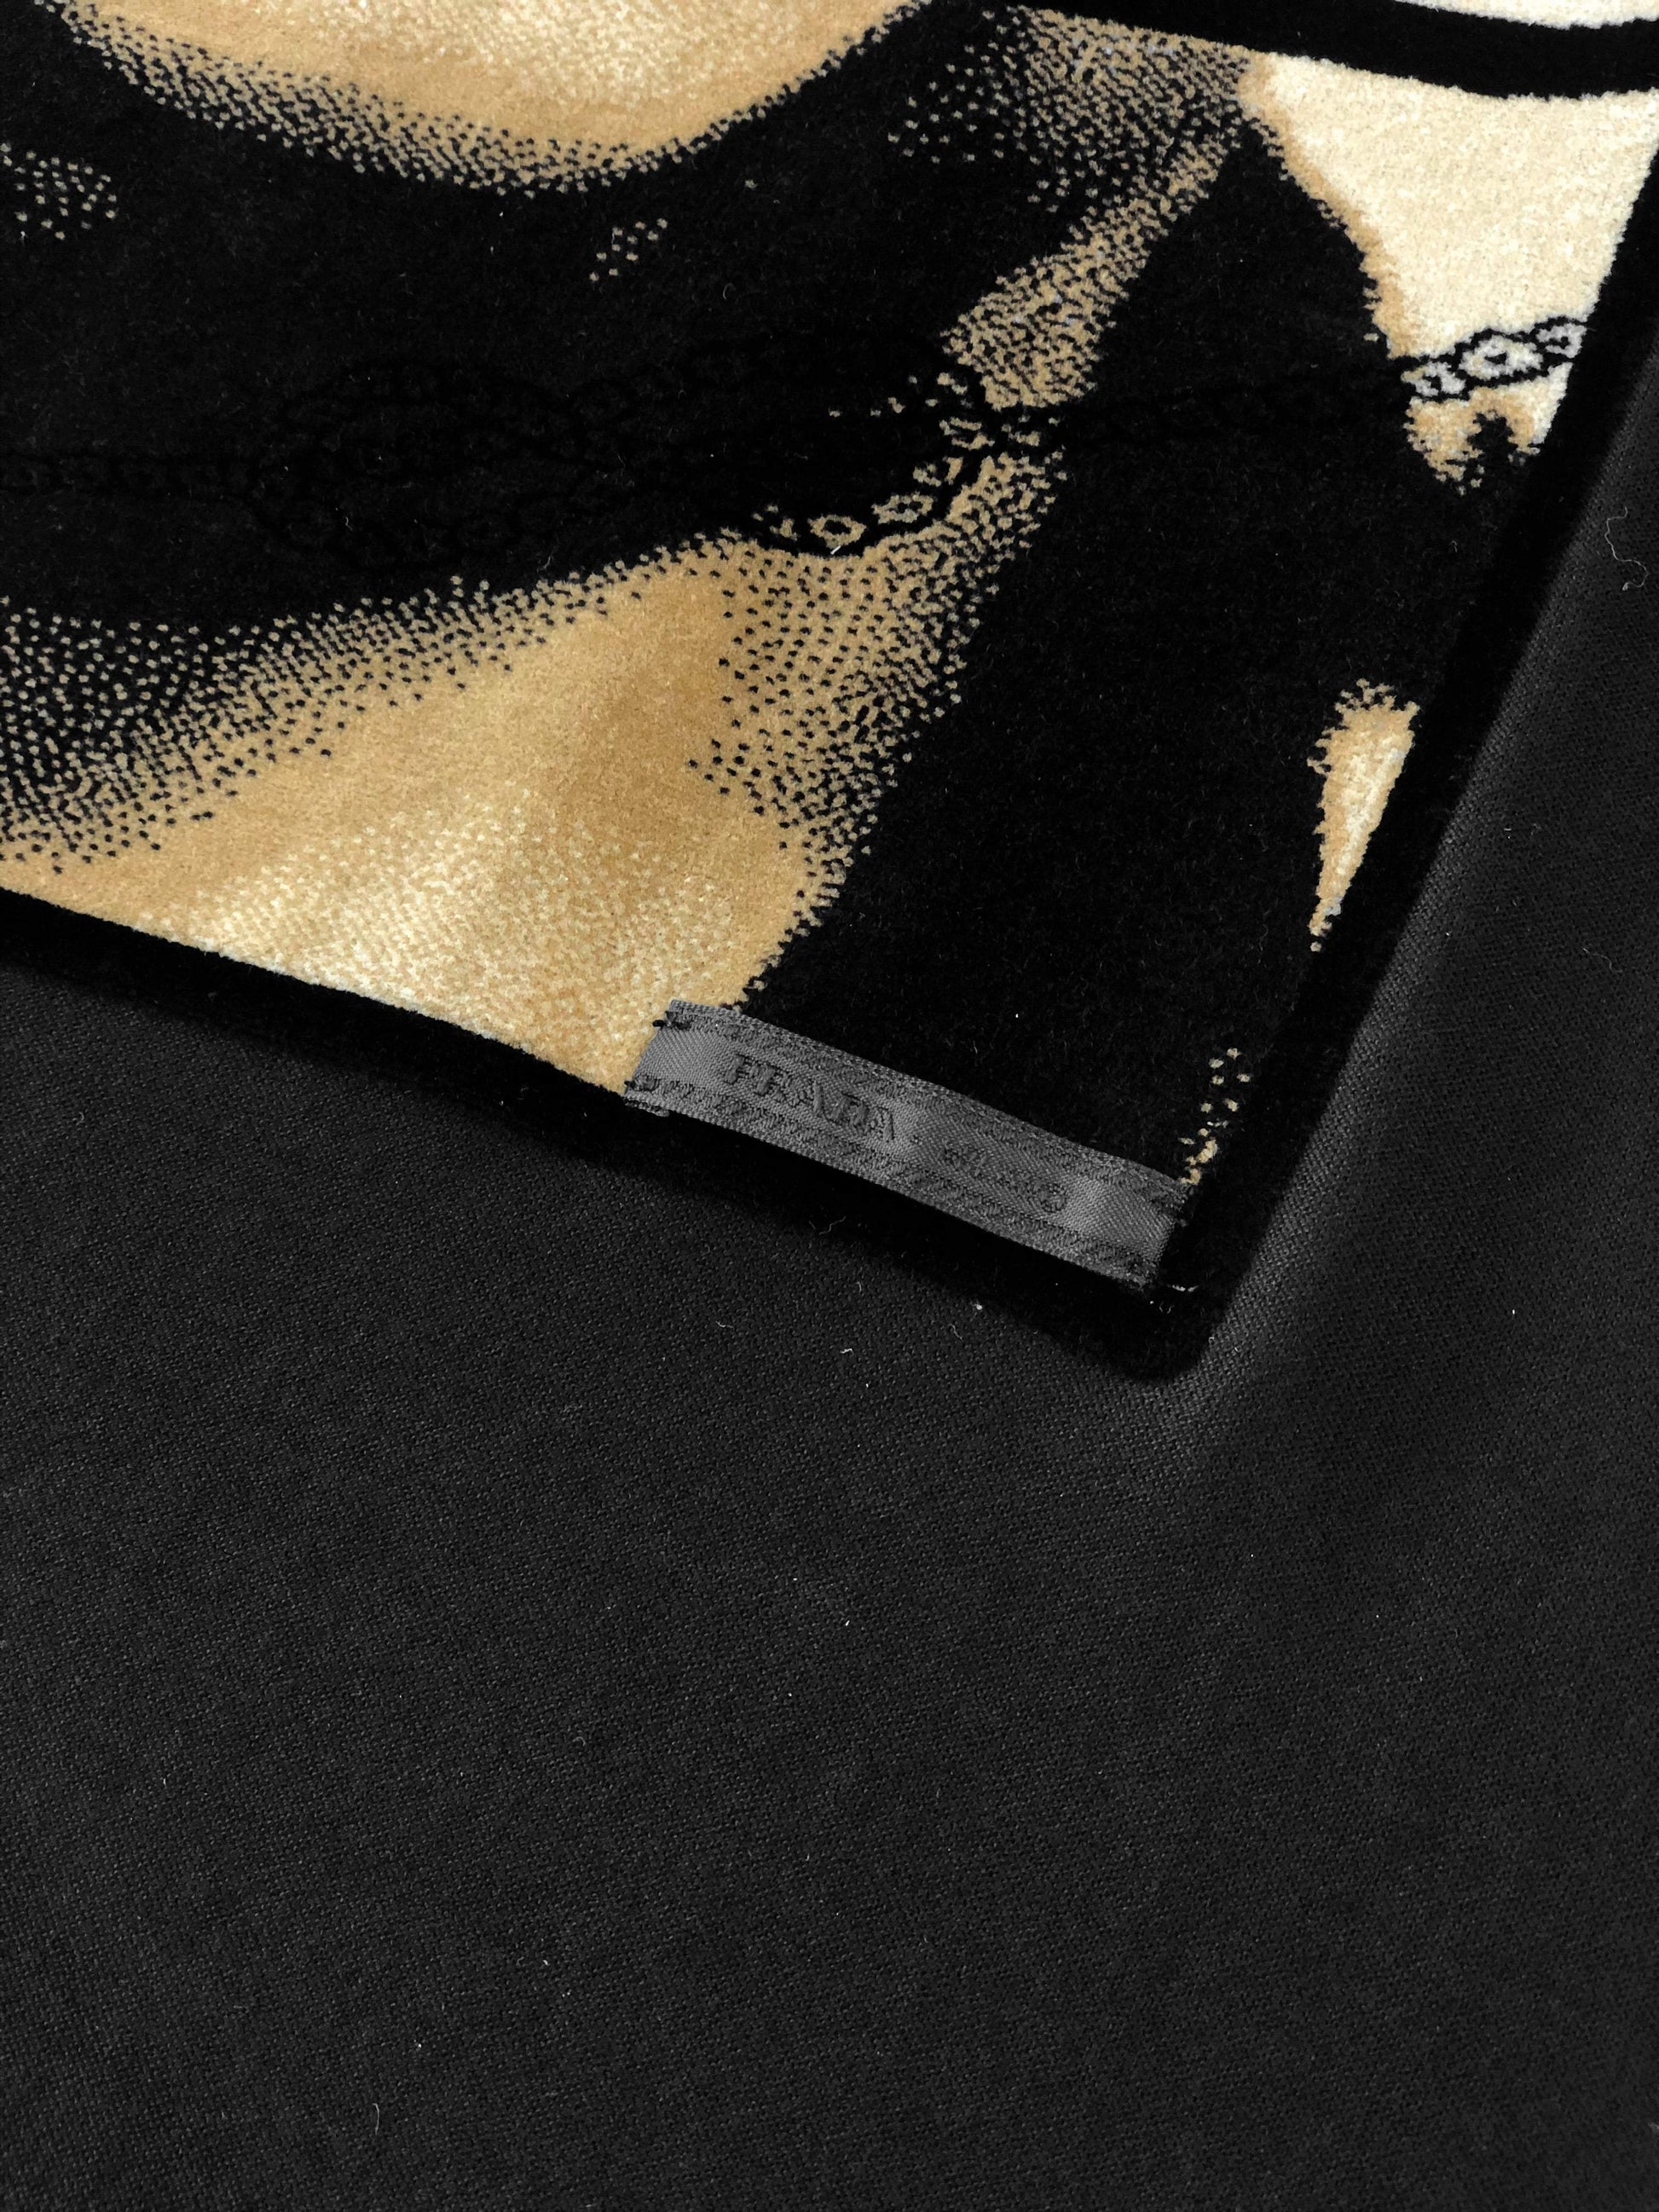 Prada Face Print Black T-shirt